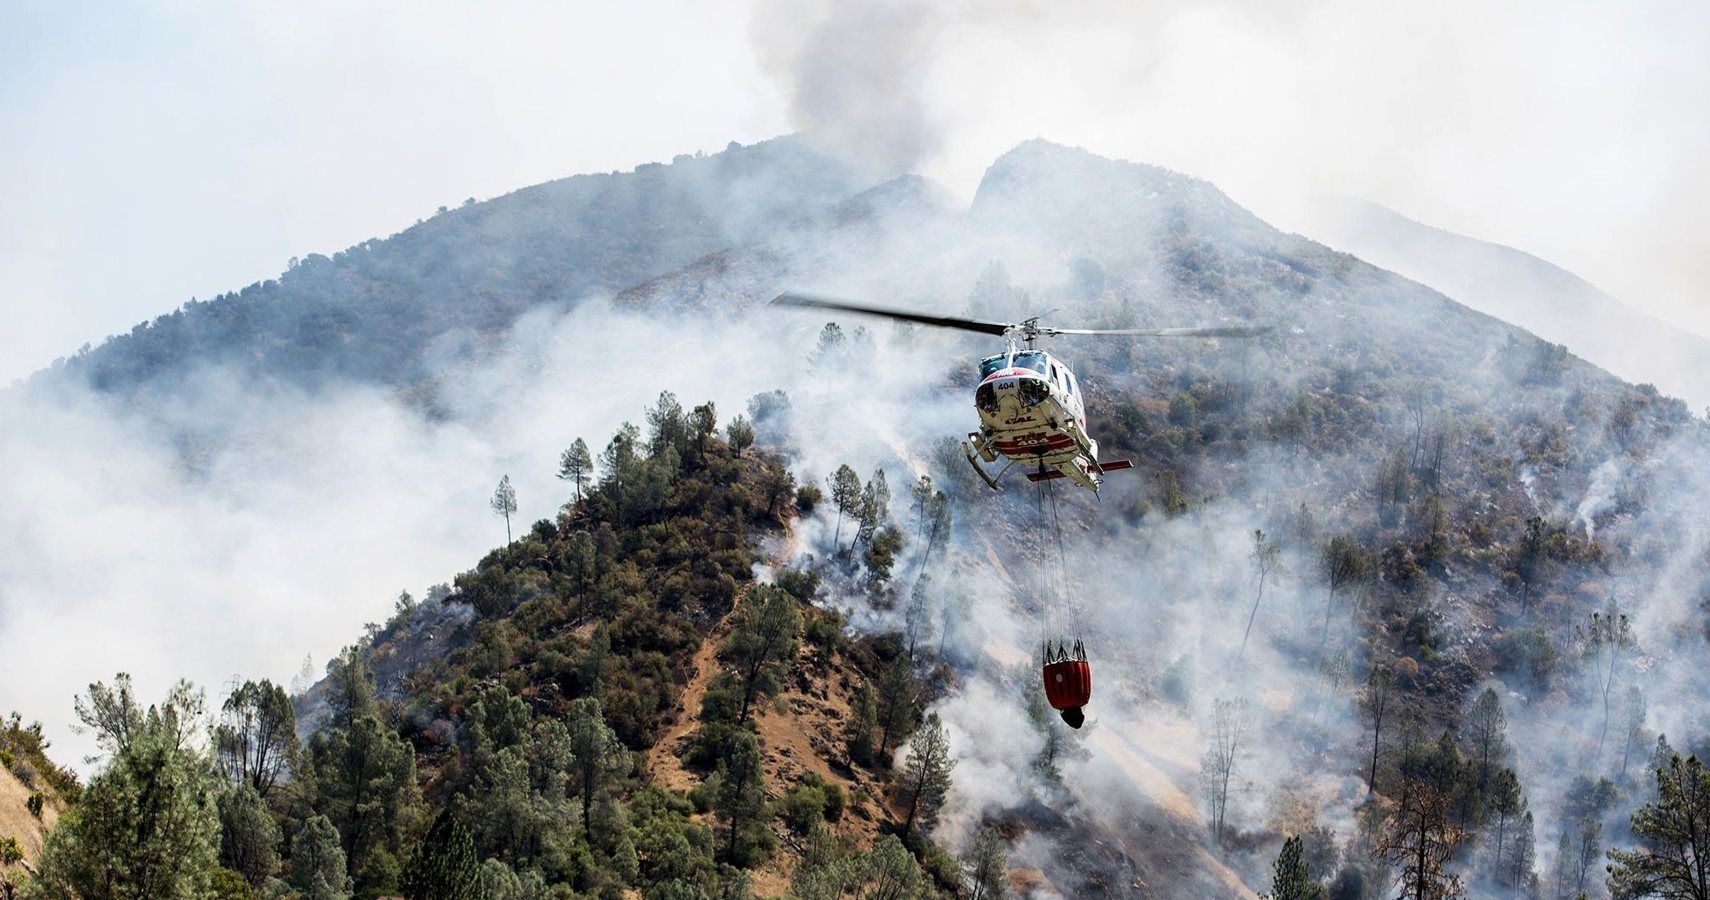 Vale de Yosemite forçado a fechar devido a incêndios florestais